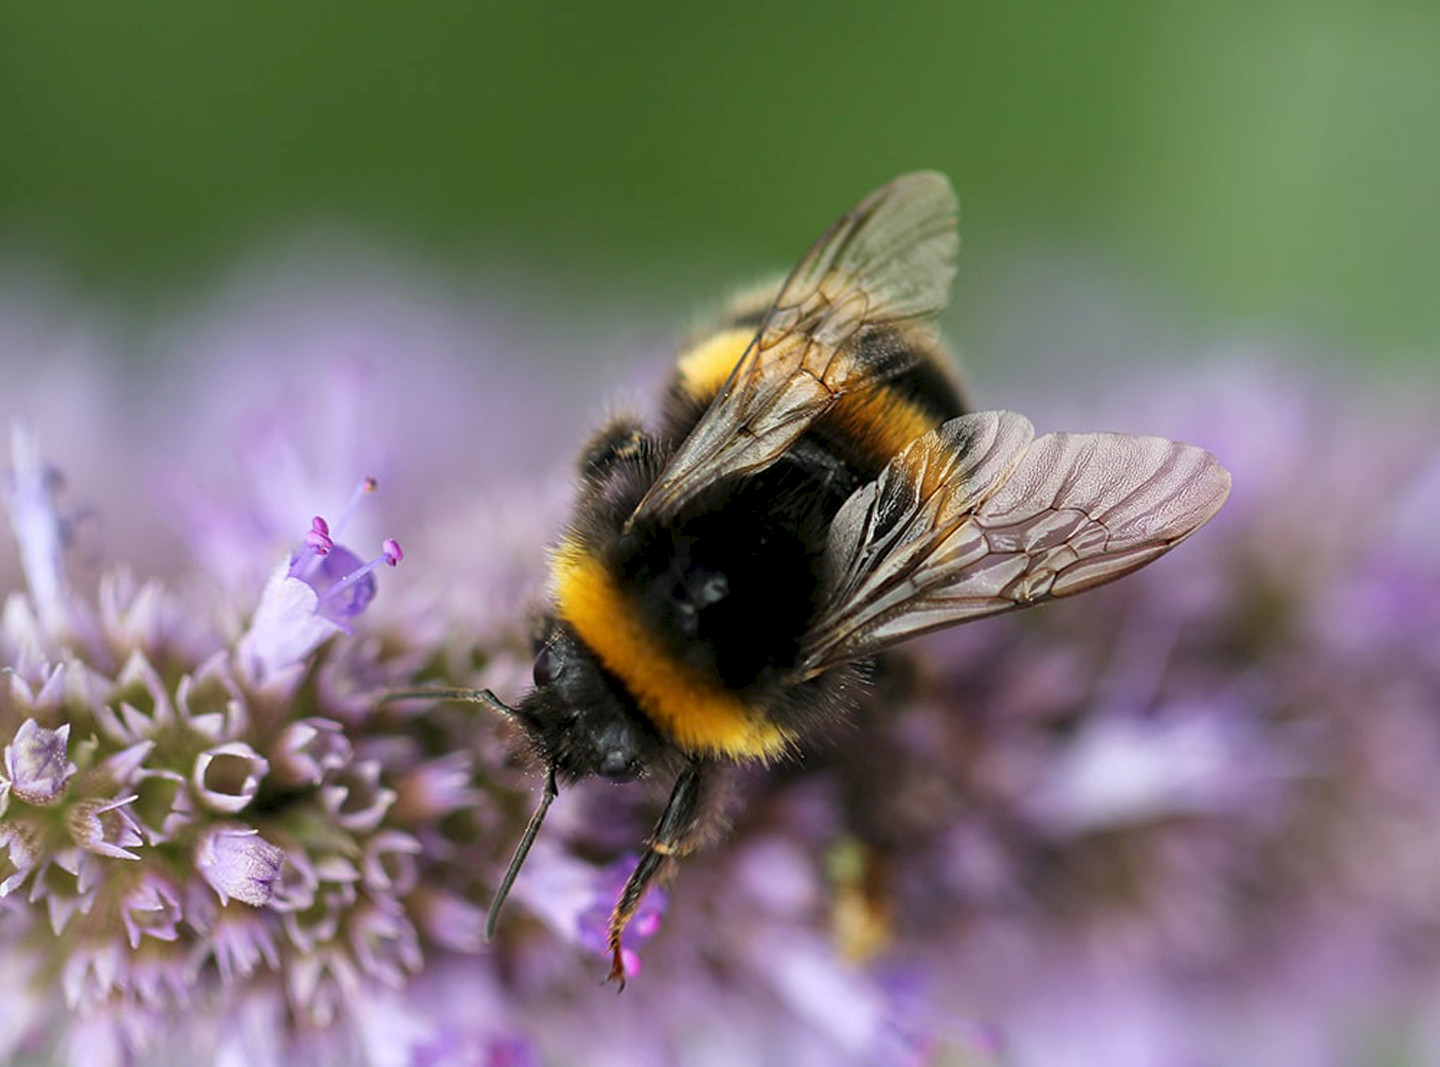 Bumblebee pollinating